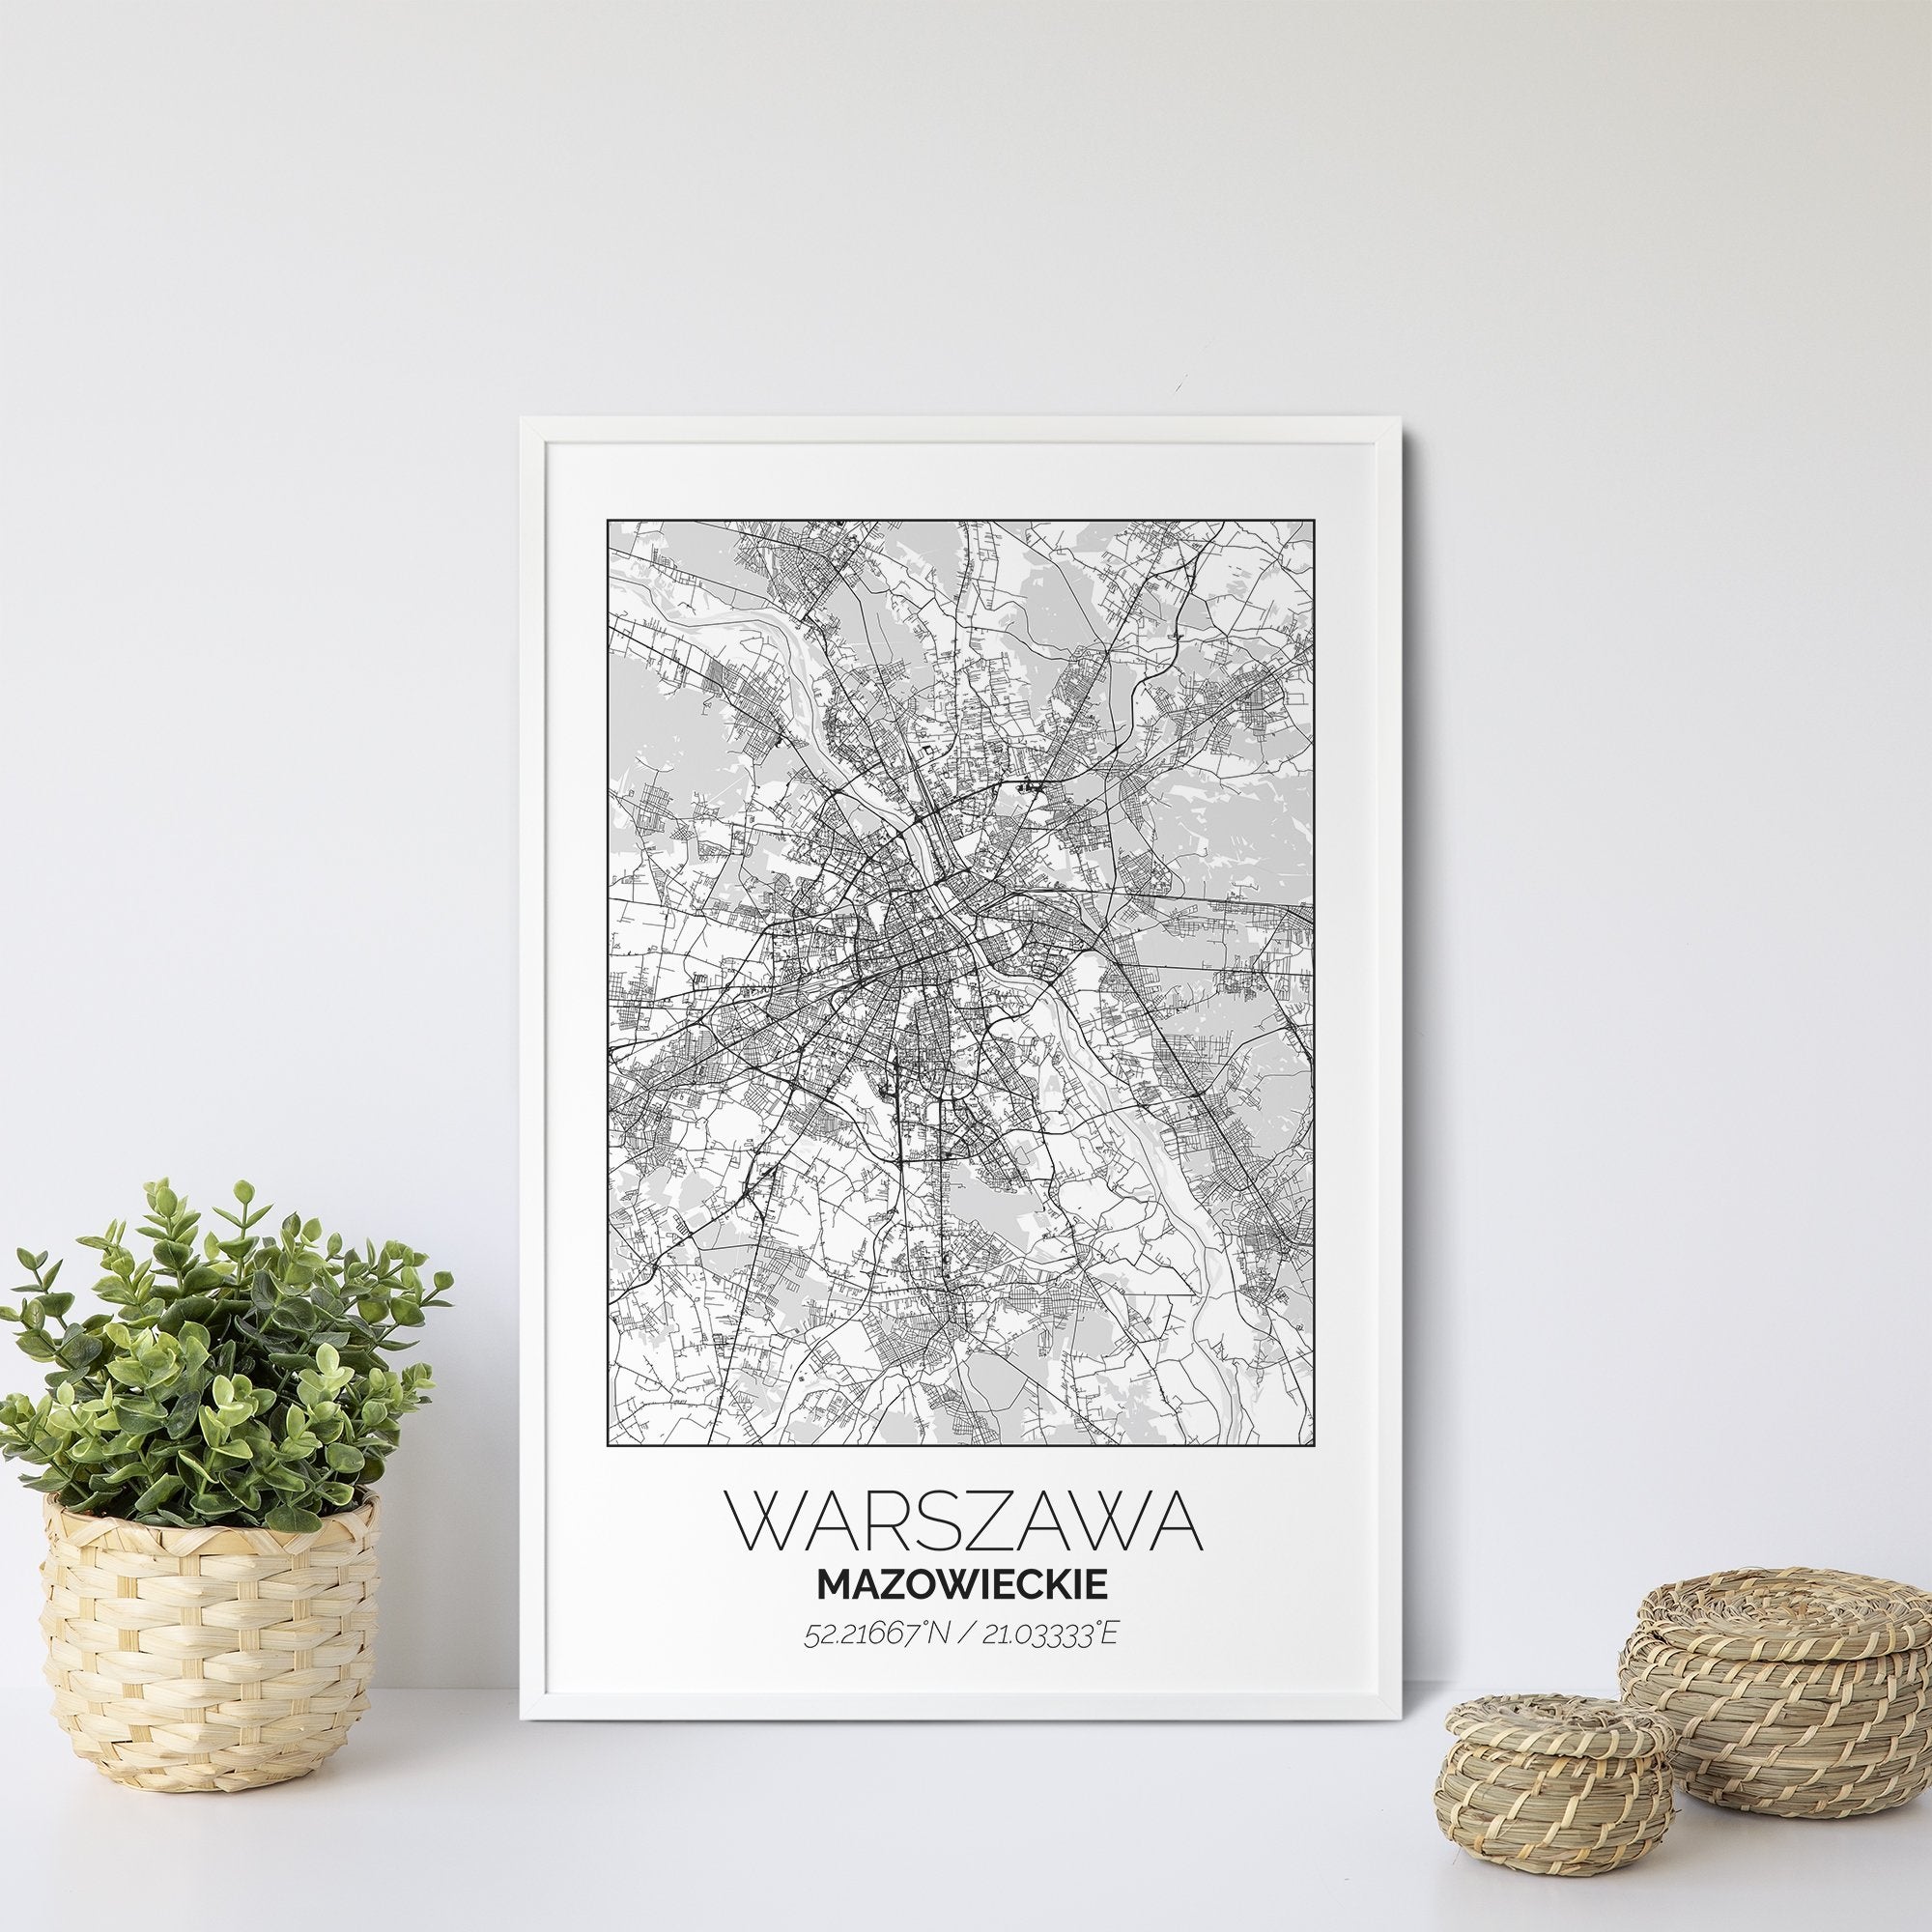 Mapa Miasta Warszawa W Ramie (Biała) - Gallart.pl